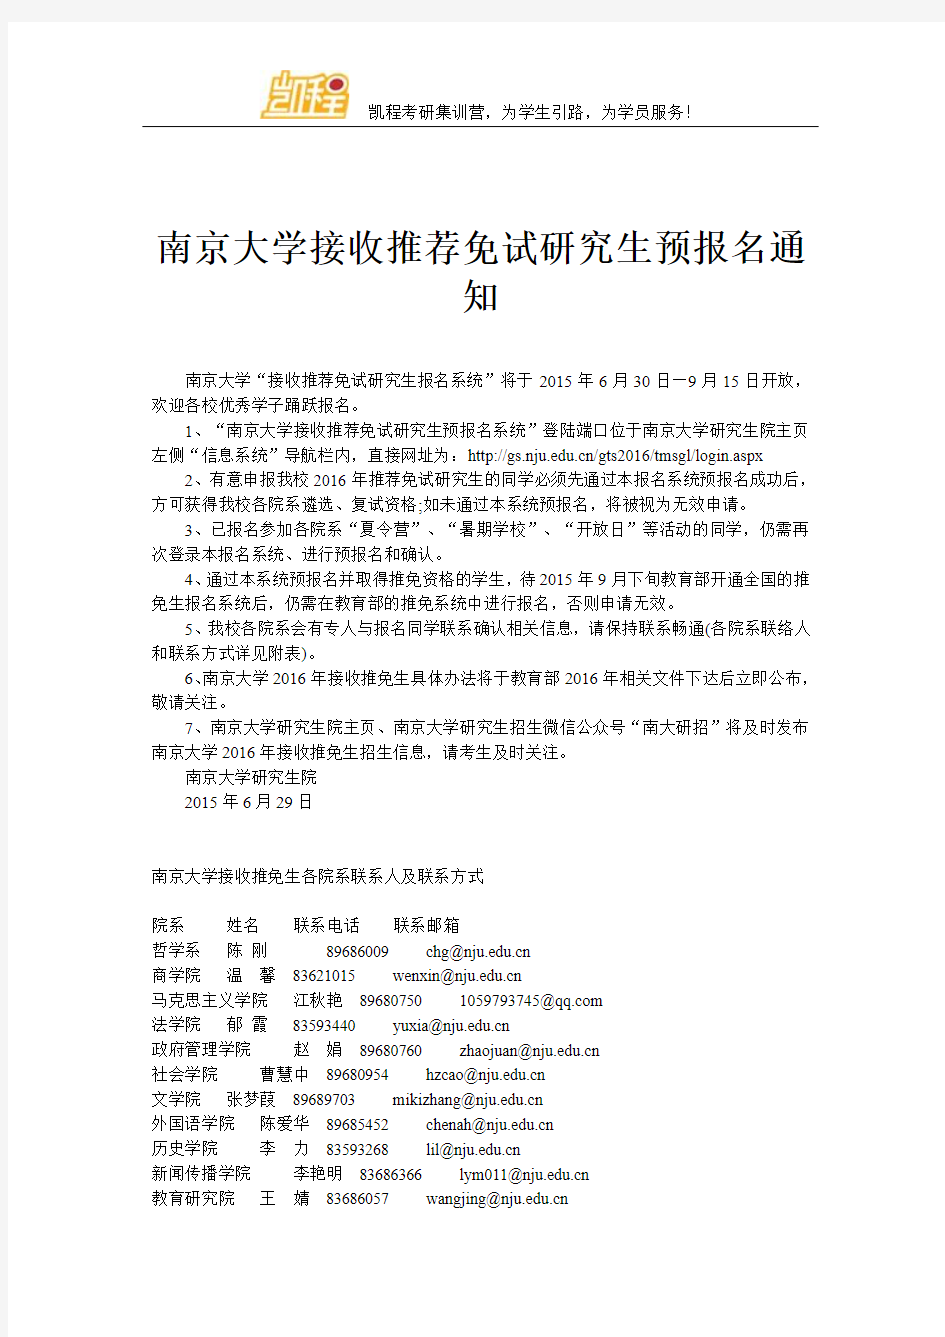 南京大学接收推荐免试研究生预报名通知